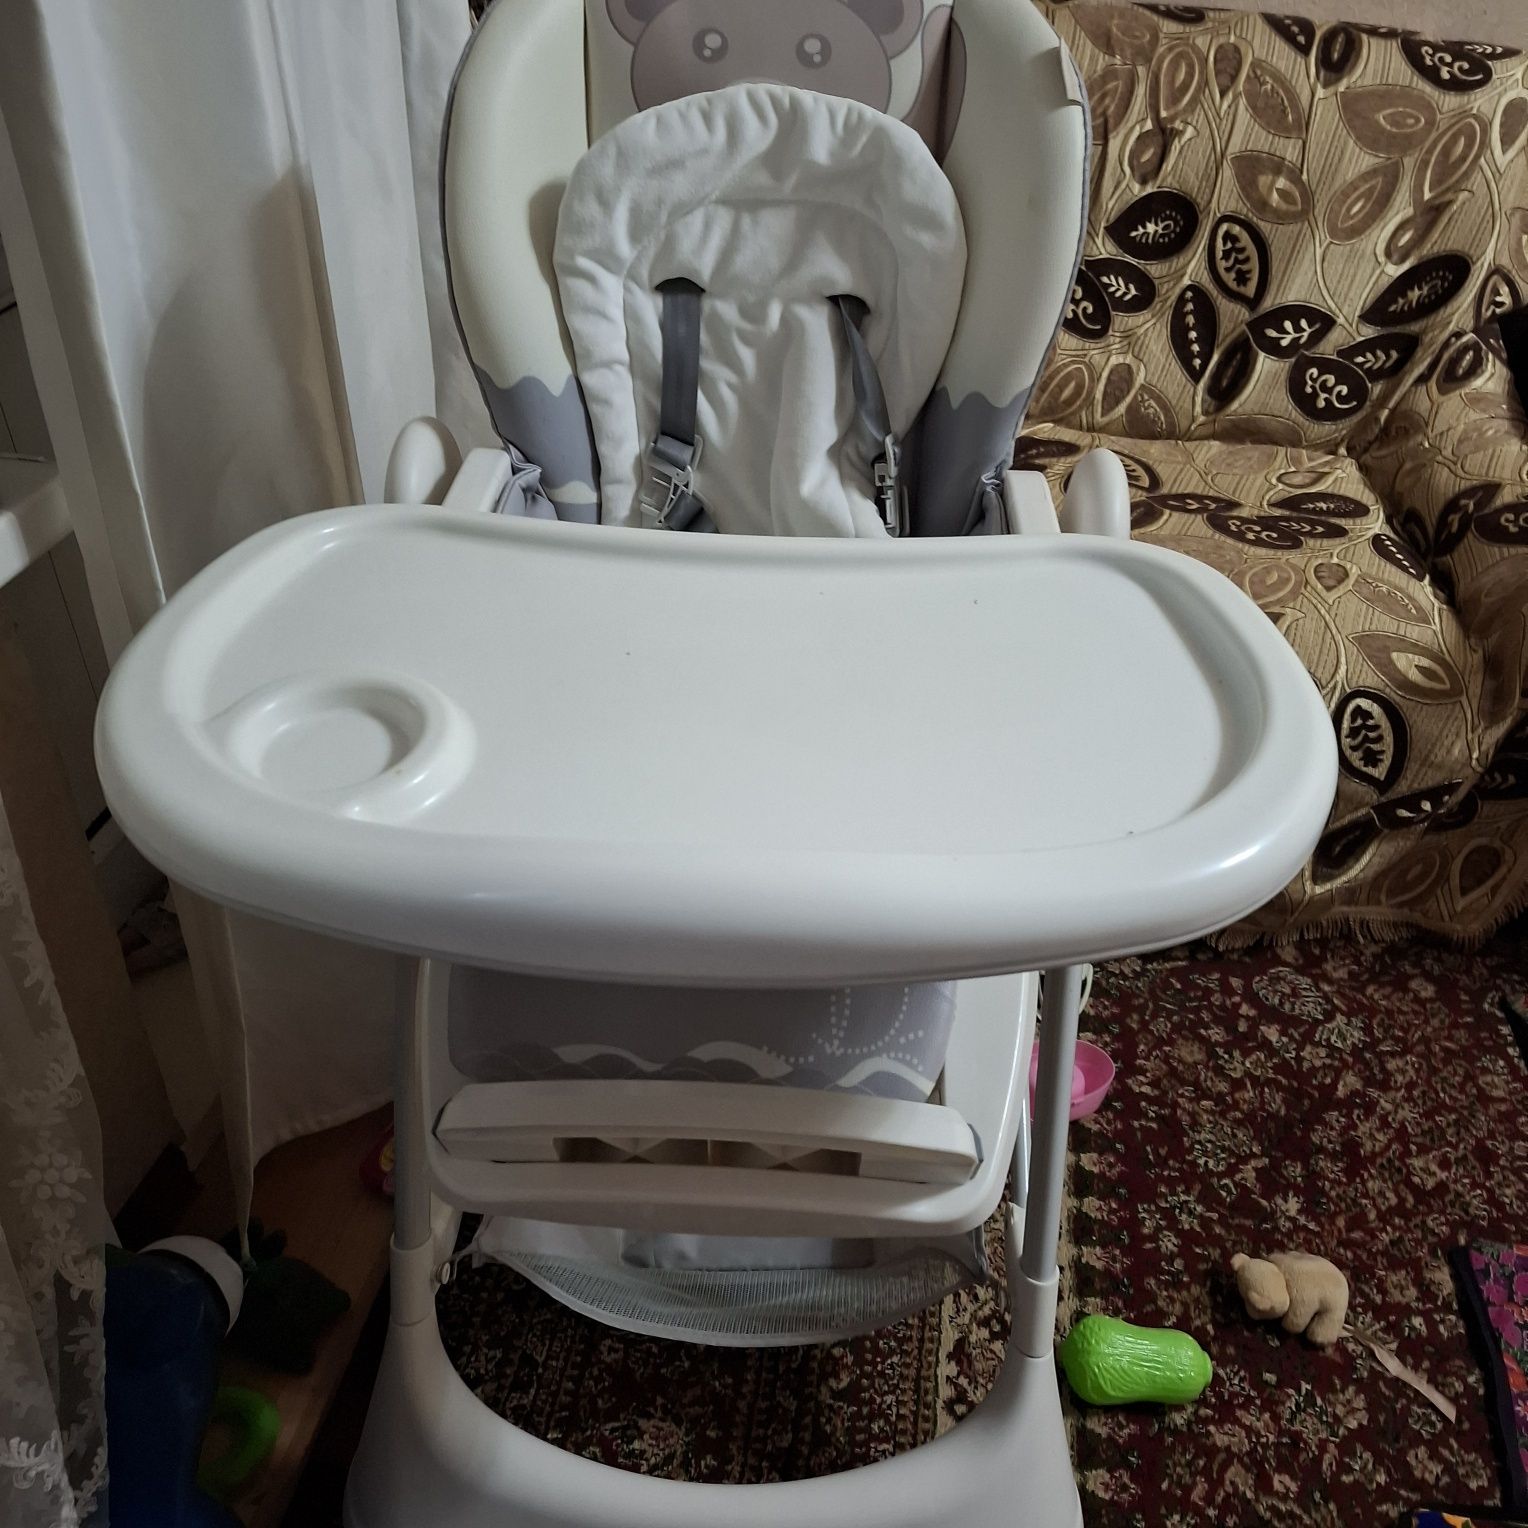 Продаю стульчик  для малышей